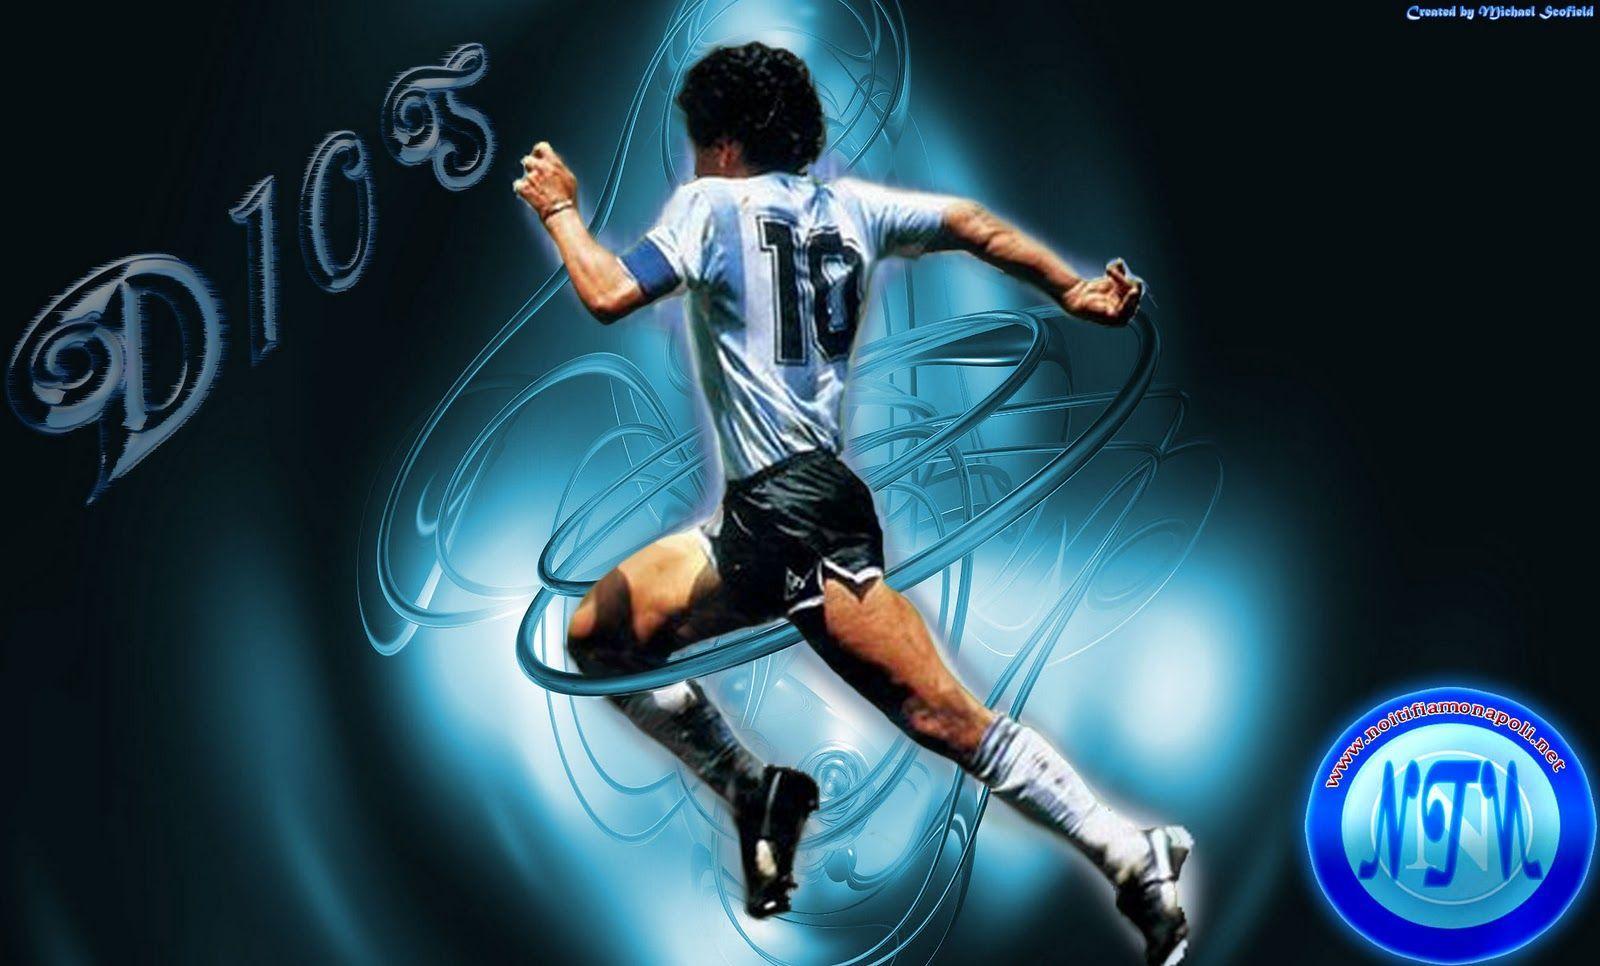 Maradona Wallpaper Free Maradona Background